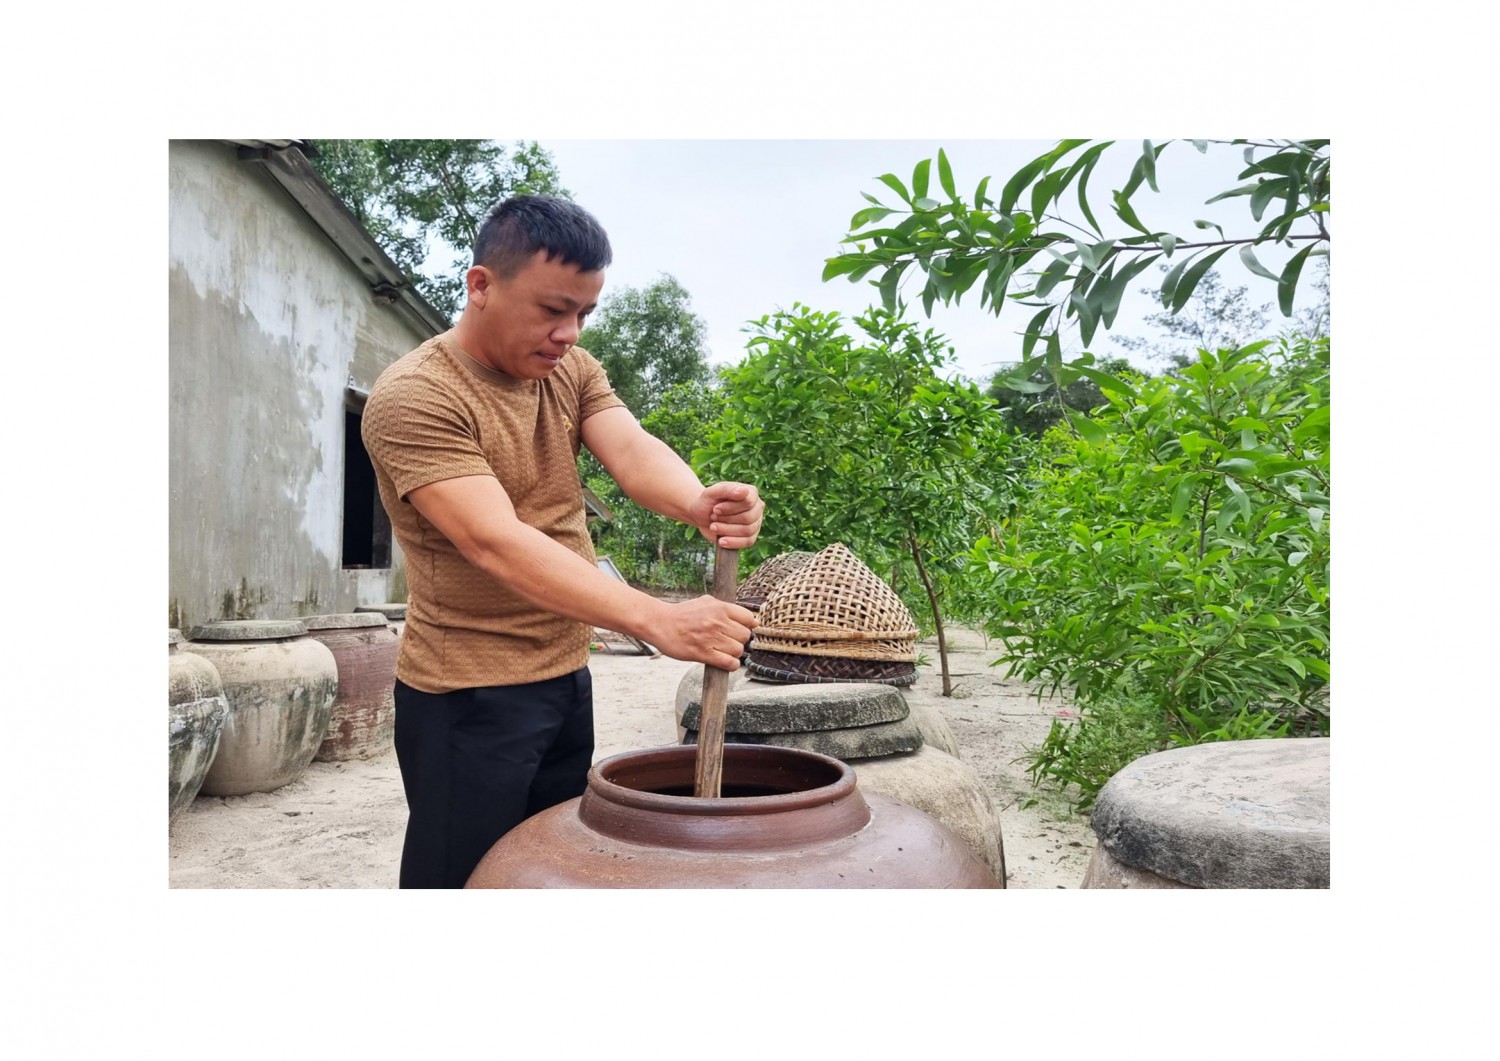 Cơ sở sản xuất nước mắm của anh Đoàn Lương ở xã Triệu Lăng góp phần giải quyết việc làm và tăng thu nhập cho lao động địa phương